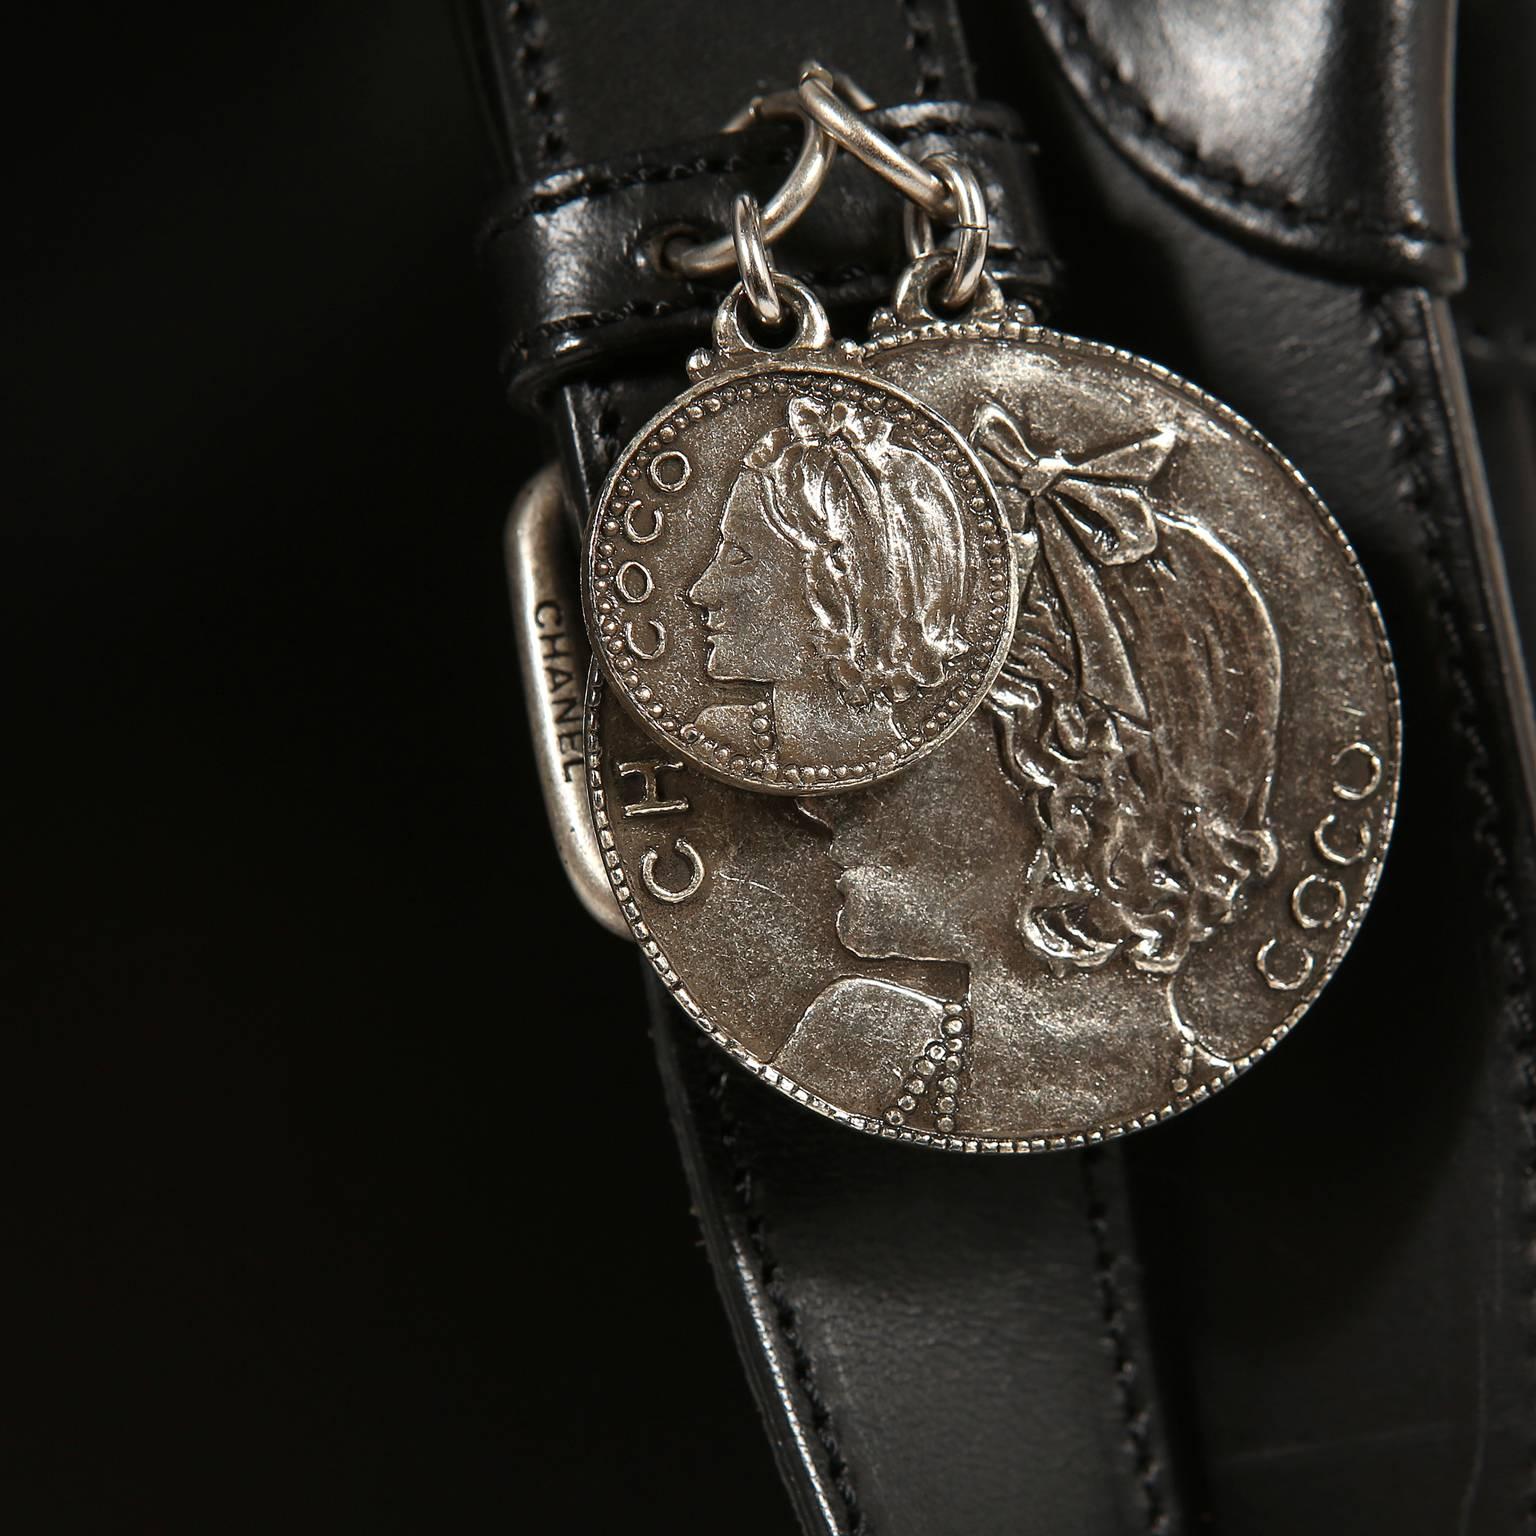 Chanel Black Leather Medallion Coins Saddle Bag- Runway 2